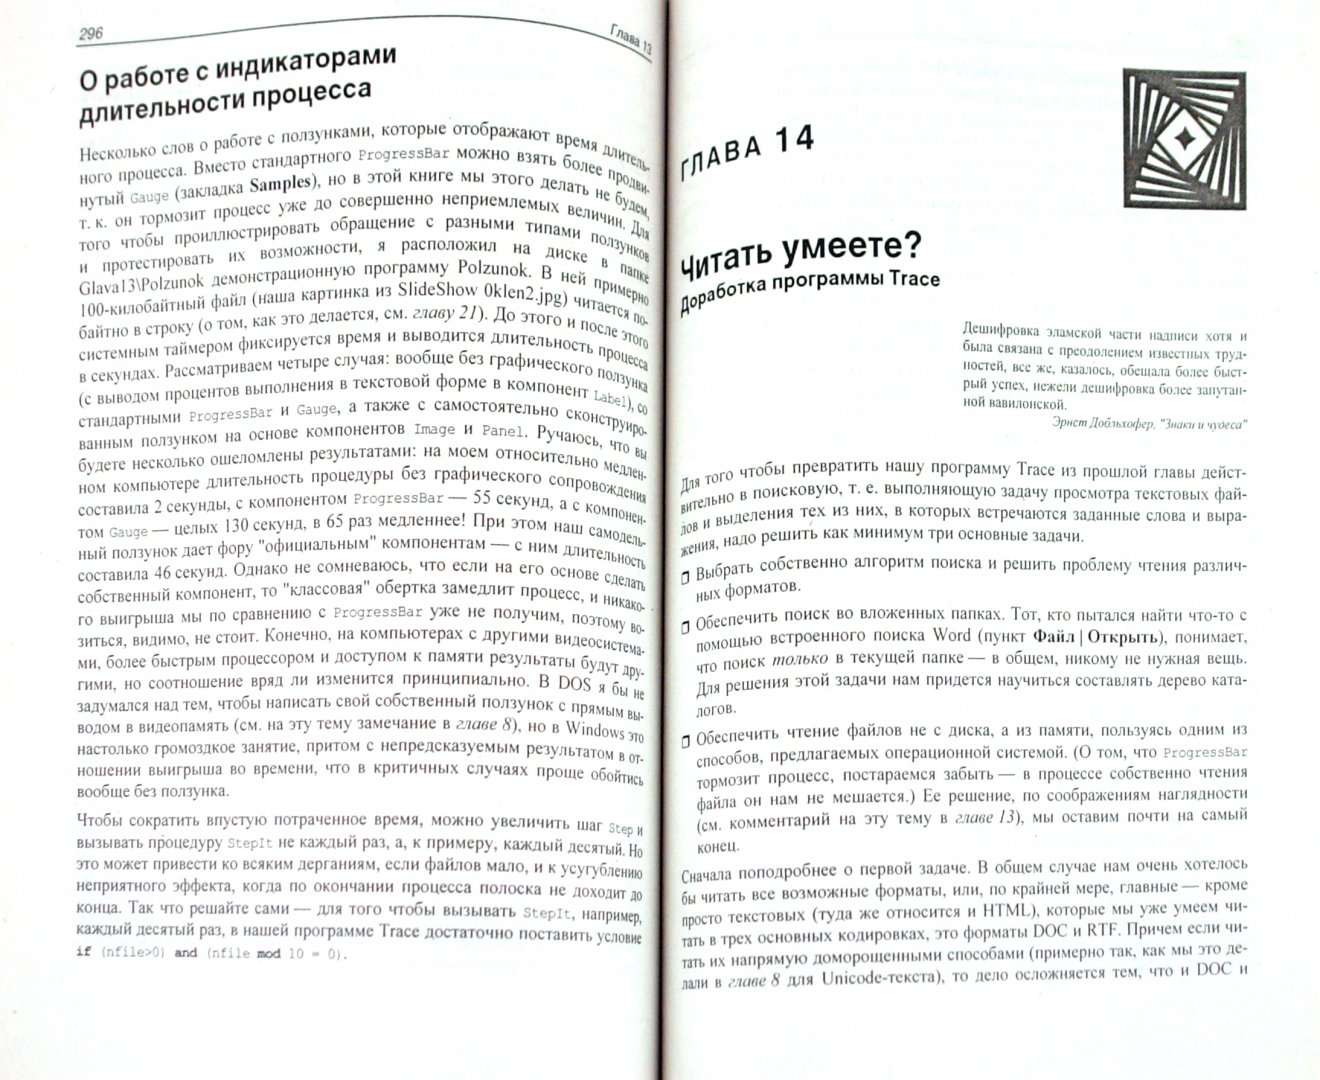 Иллюстрация 1 из 11 для Нестандартные приемы программирования на Delphi (+CD) - Юрий Ревич | Лабиринт - книги. Источник: Лабиринт